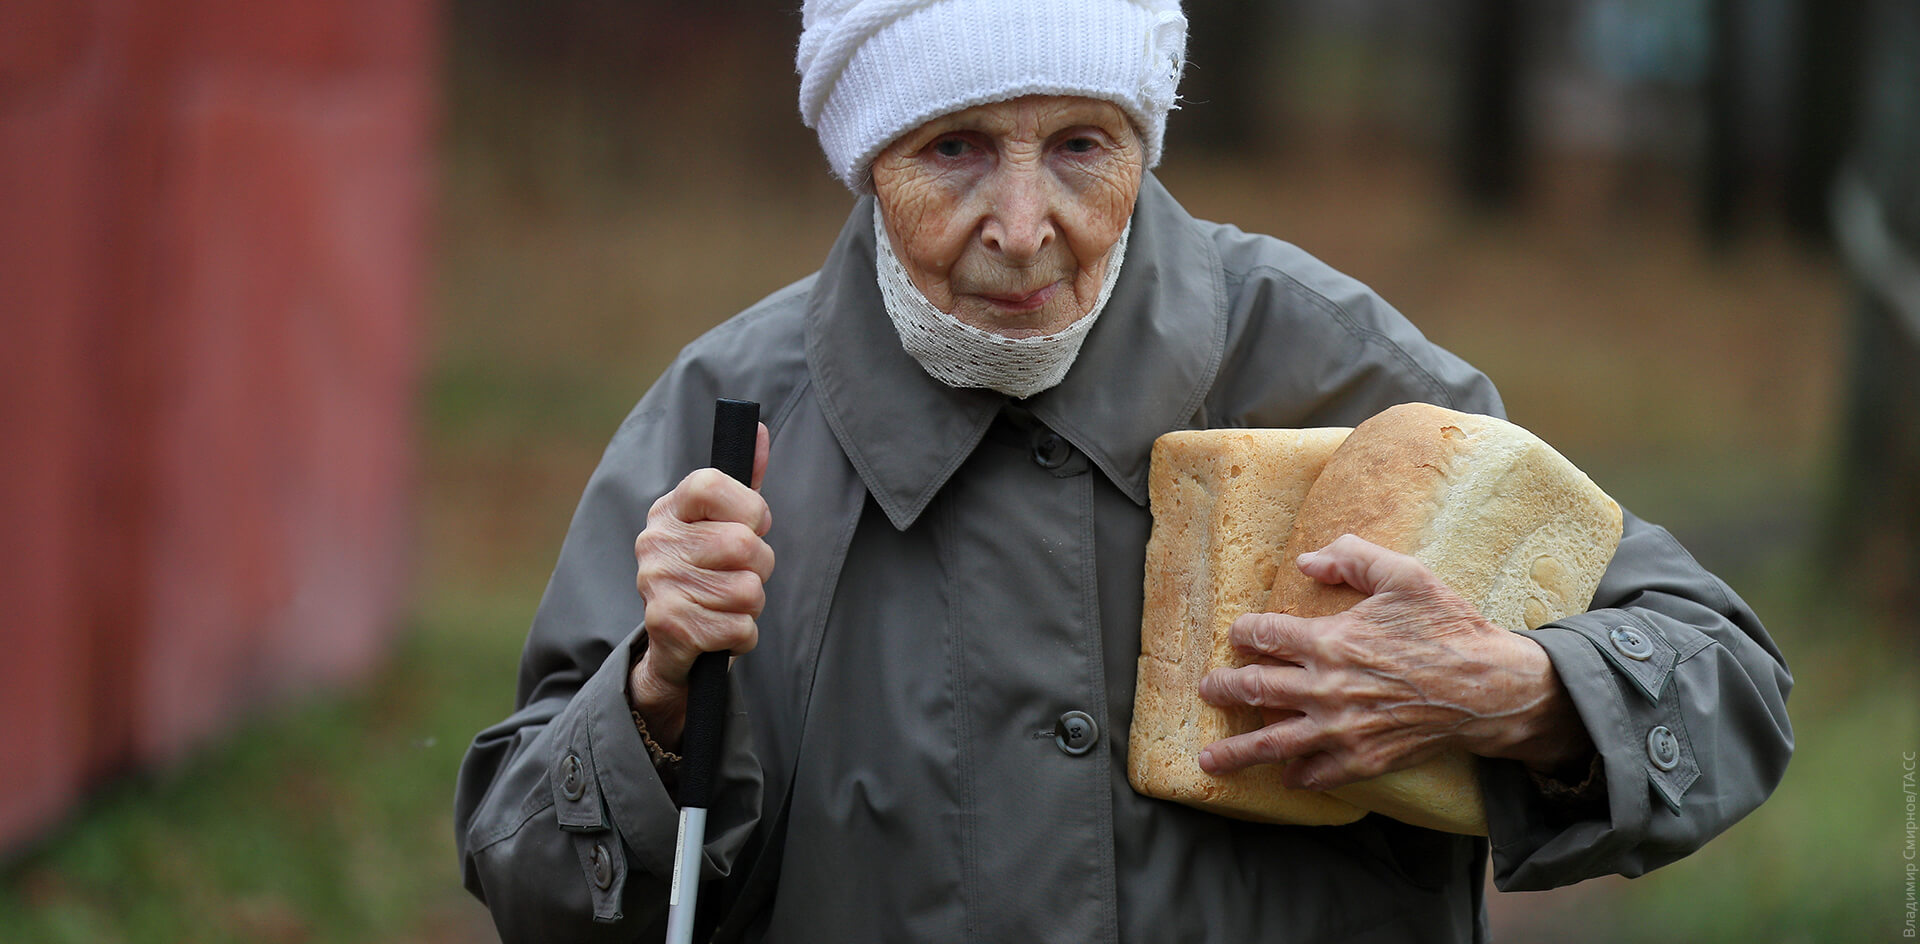 Жители посёлка в Хабаровском крае получают хлеб по записи